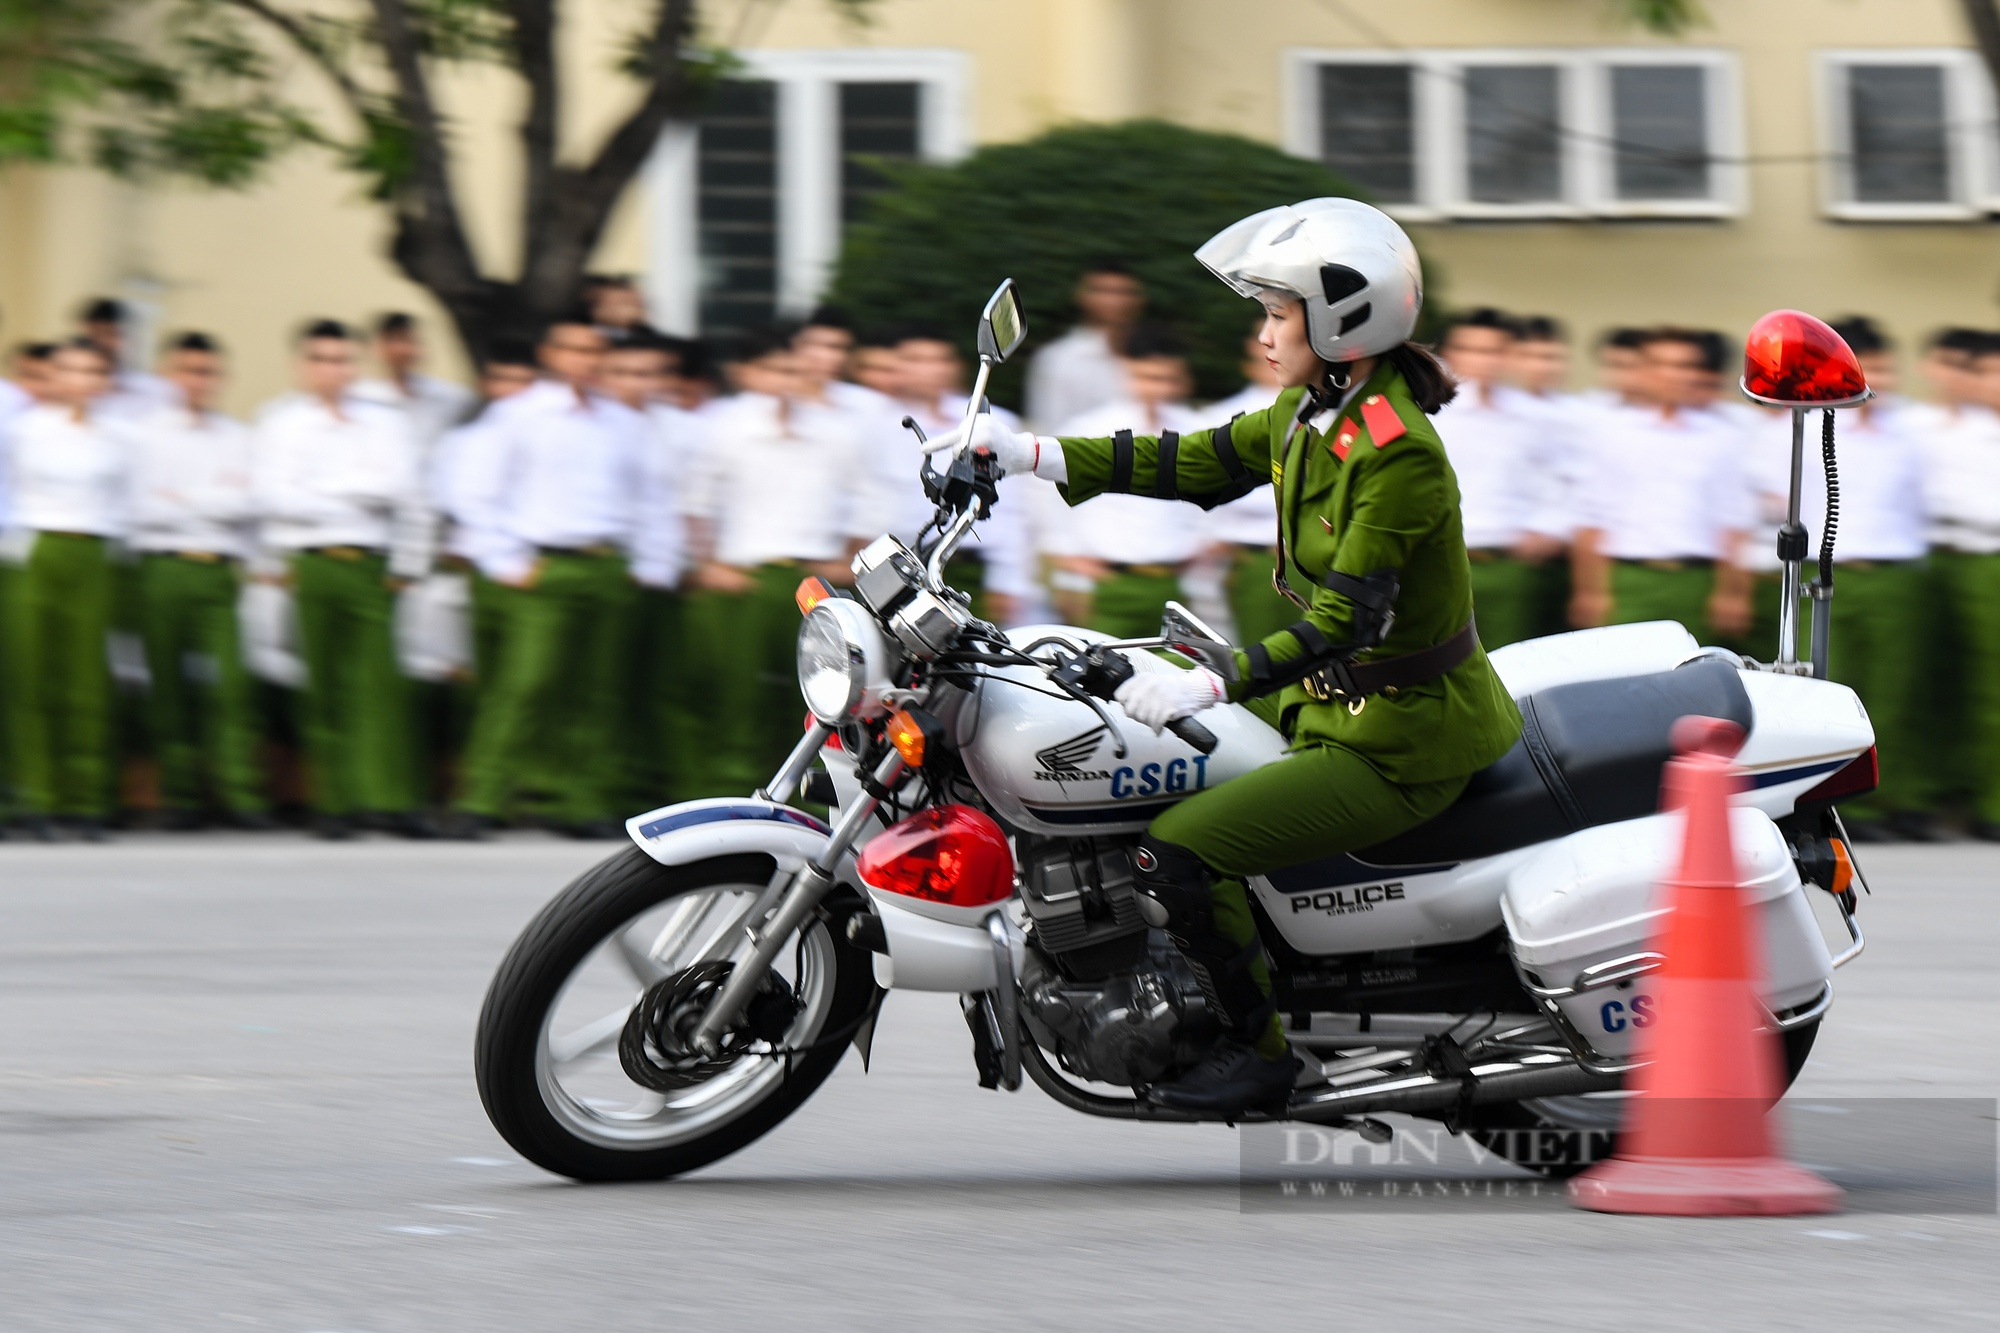 Màn biểu diễn võ thuật, lái xe mô khó rời mắt của hàng trăm sinh viên Học viện Cảnh sát - Ảnh 8.